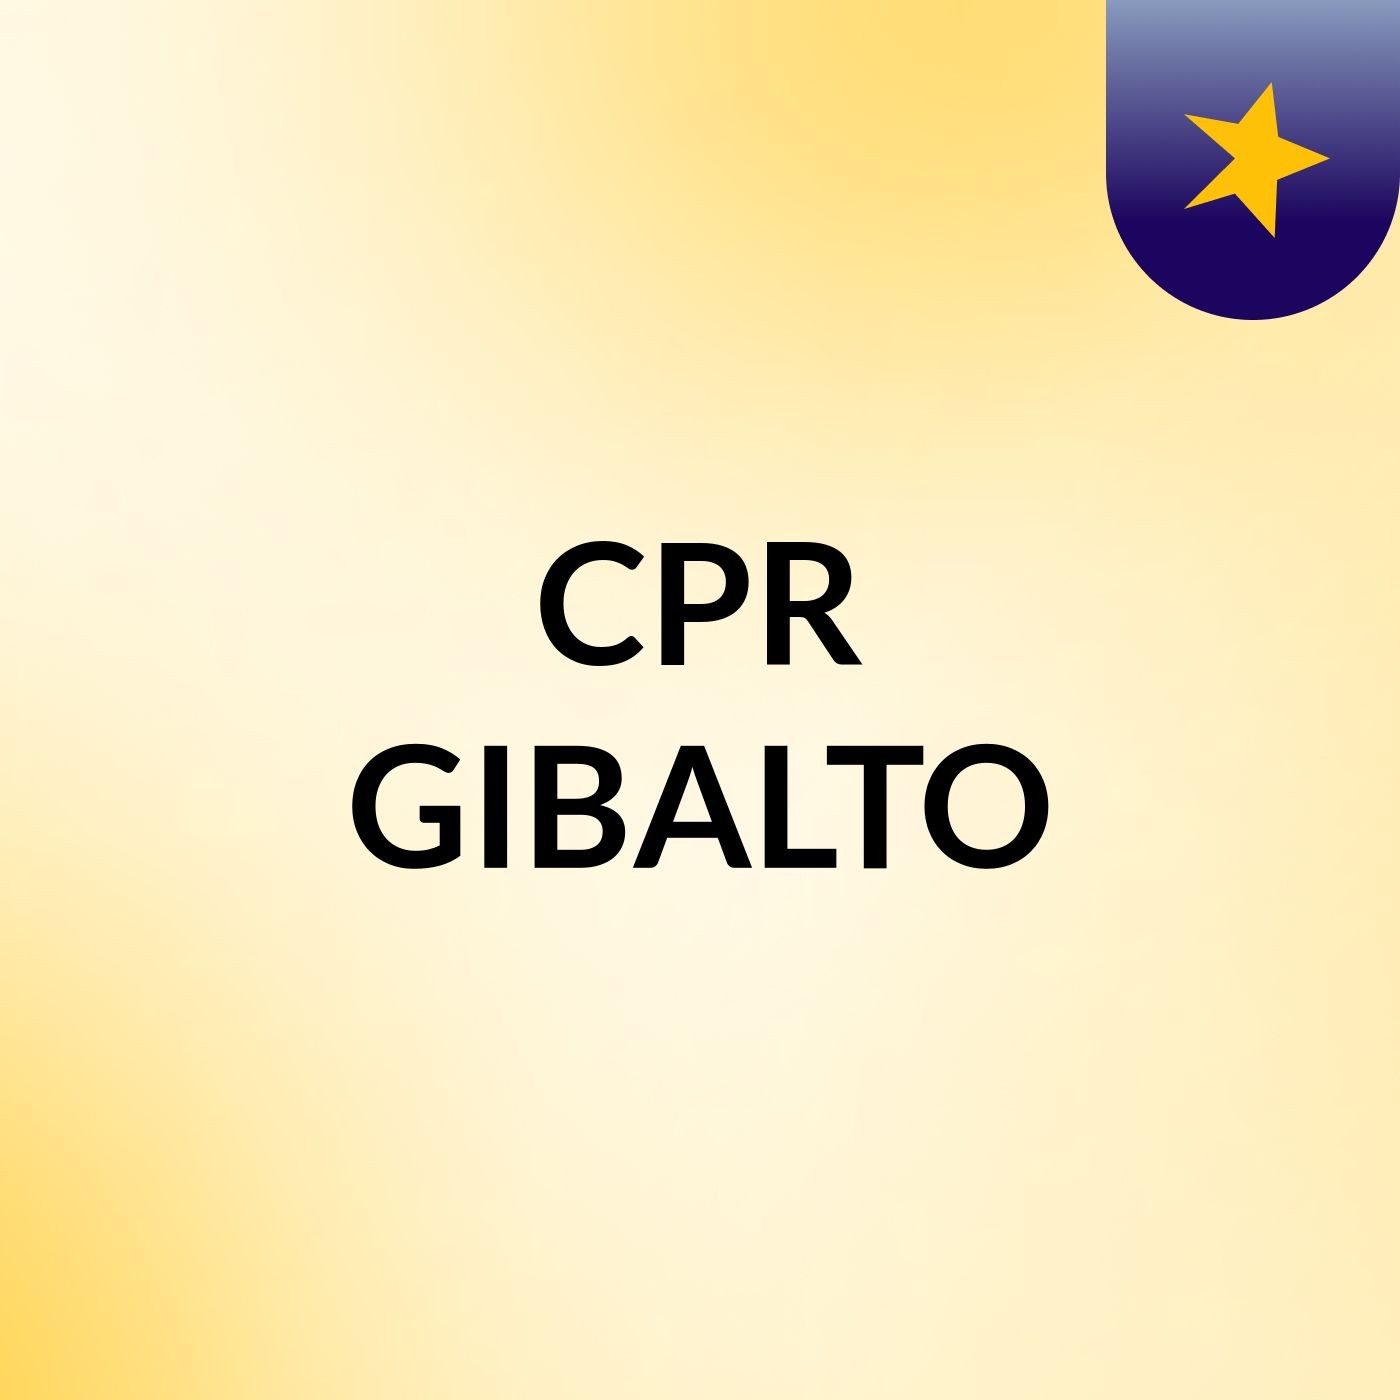 CPR GIBALTO